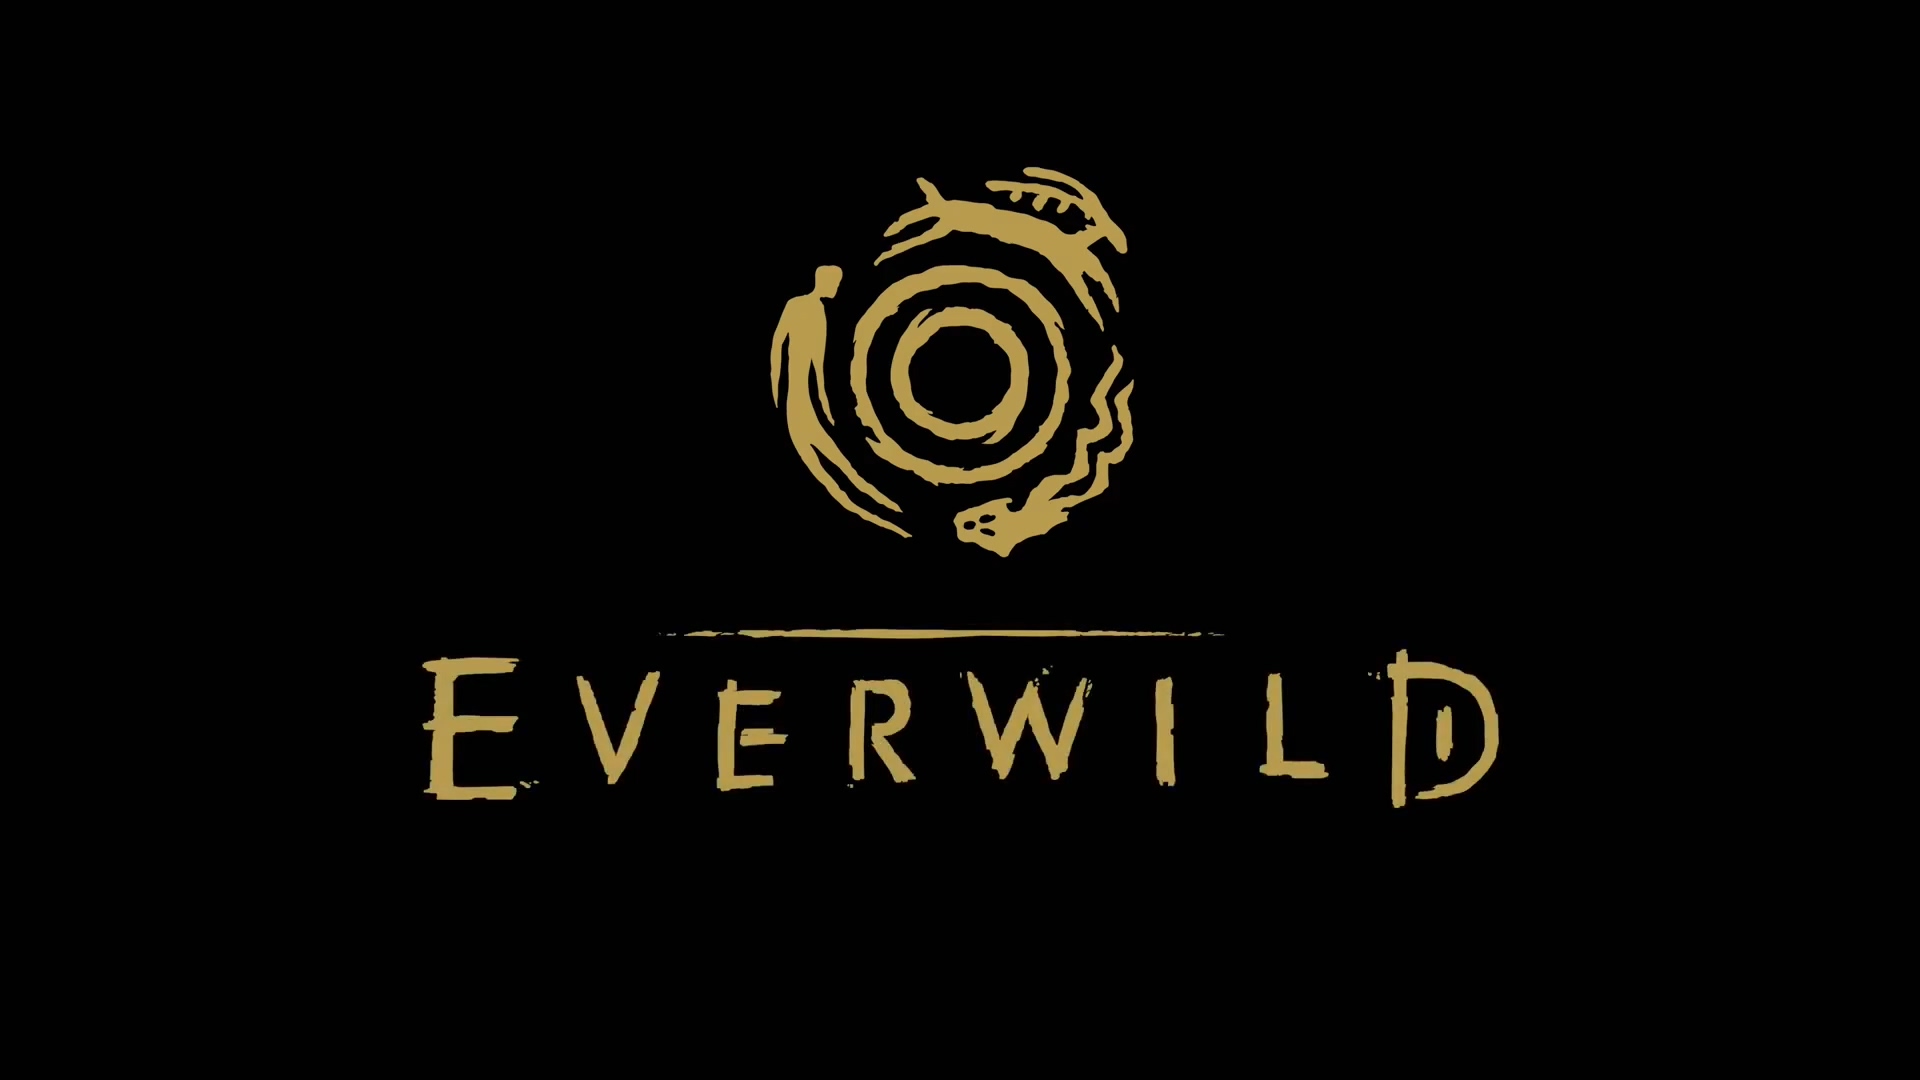 瑰丽魔法世界 Rare冒险新游《Everwild》正式发布